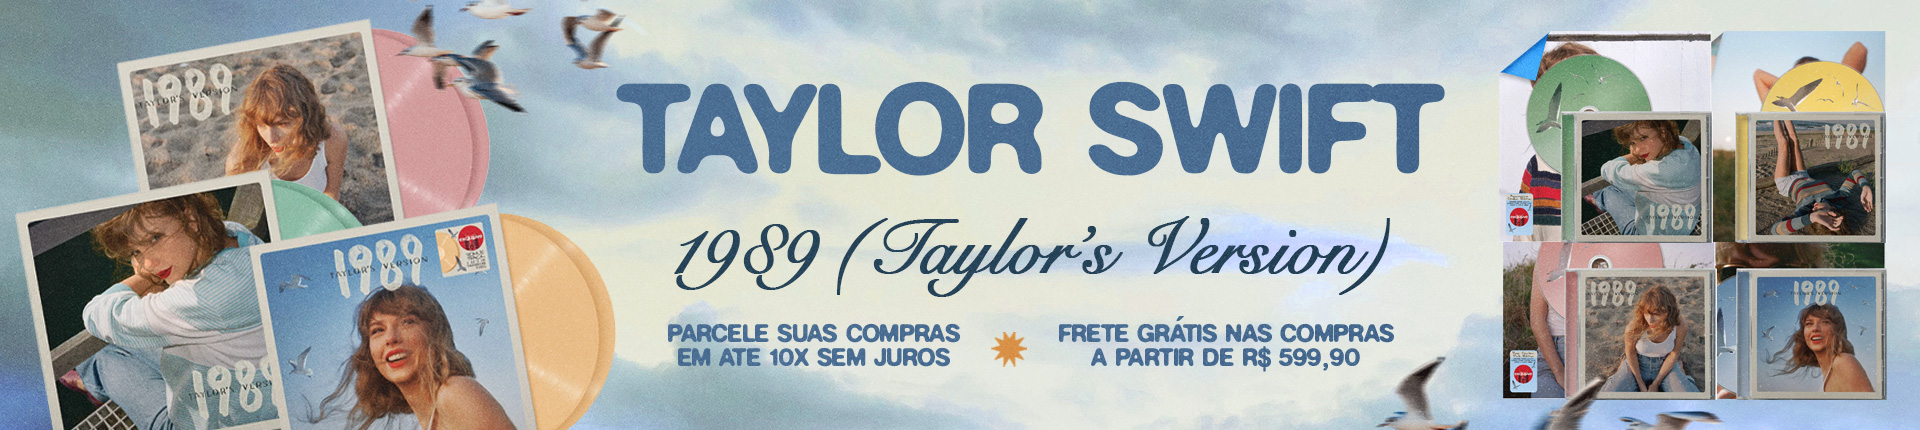 Taylor 1989